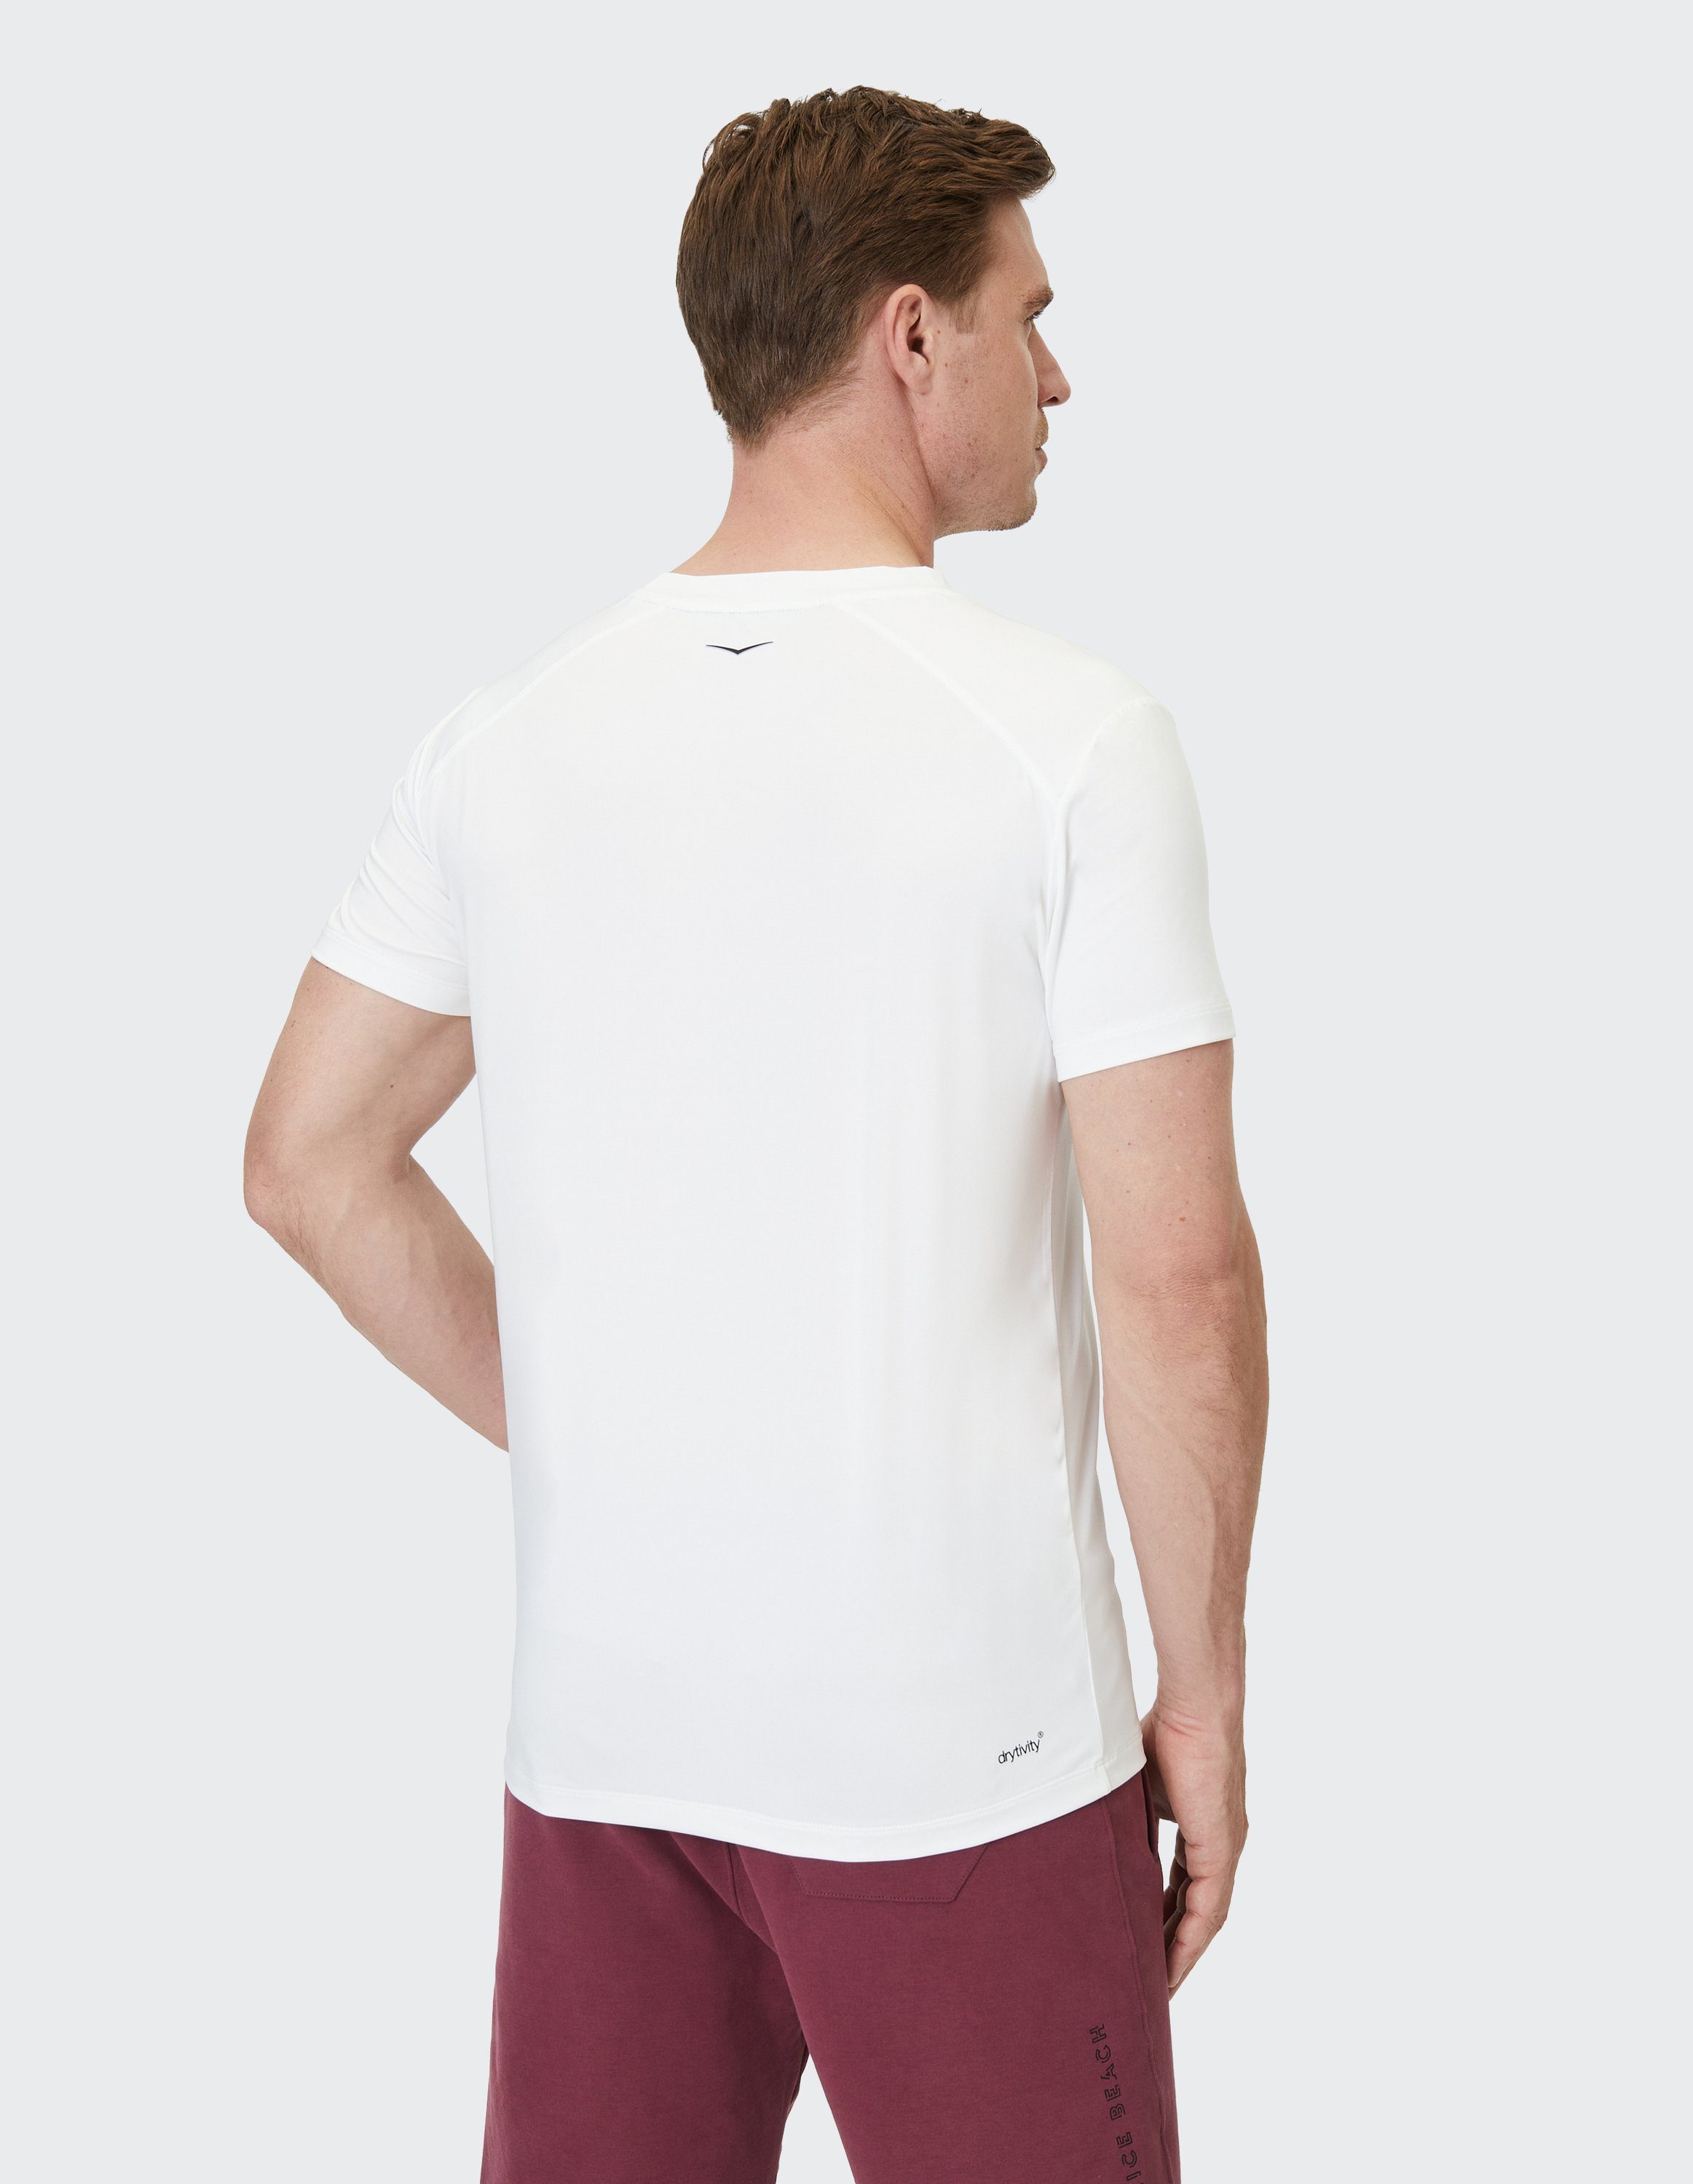 Venice Beach T-Shirt VBM T-Shirt white Hayes